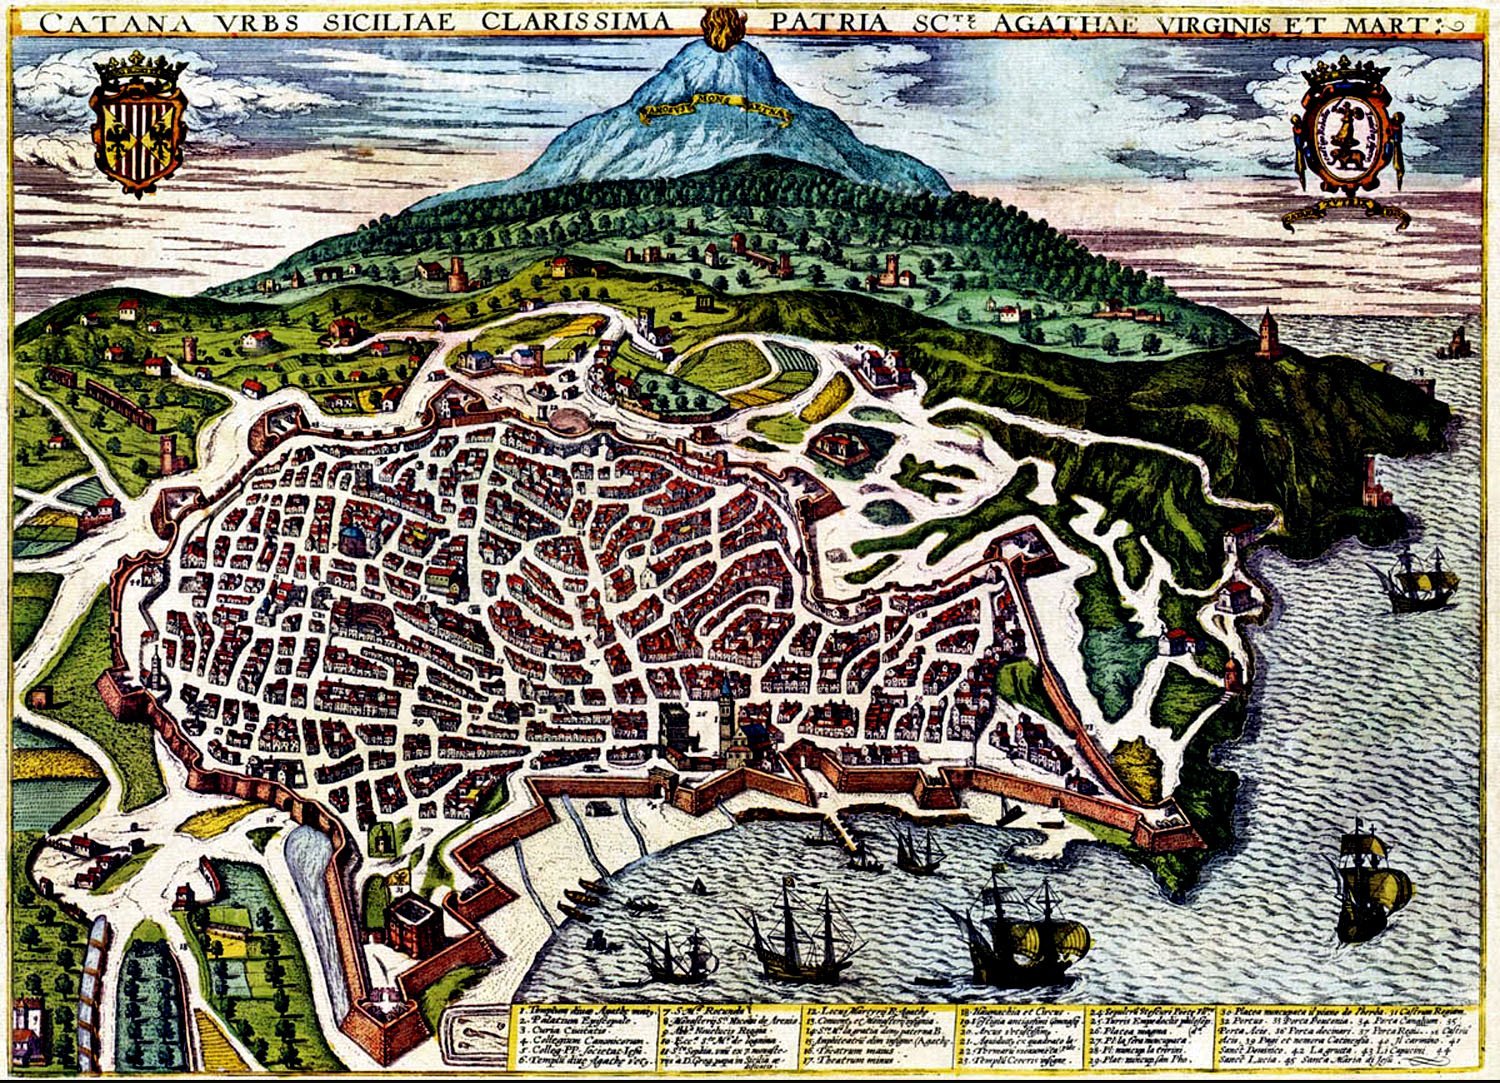 Le Leggende sul Terremoto del 1693 a Catania